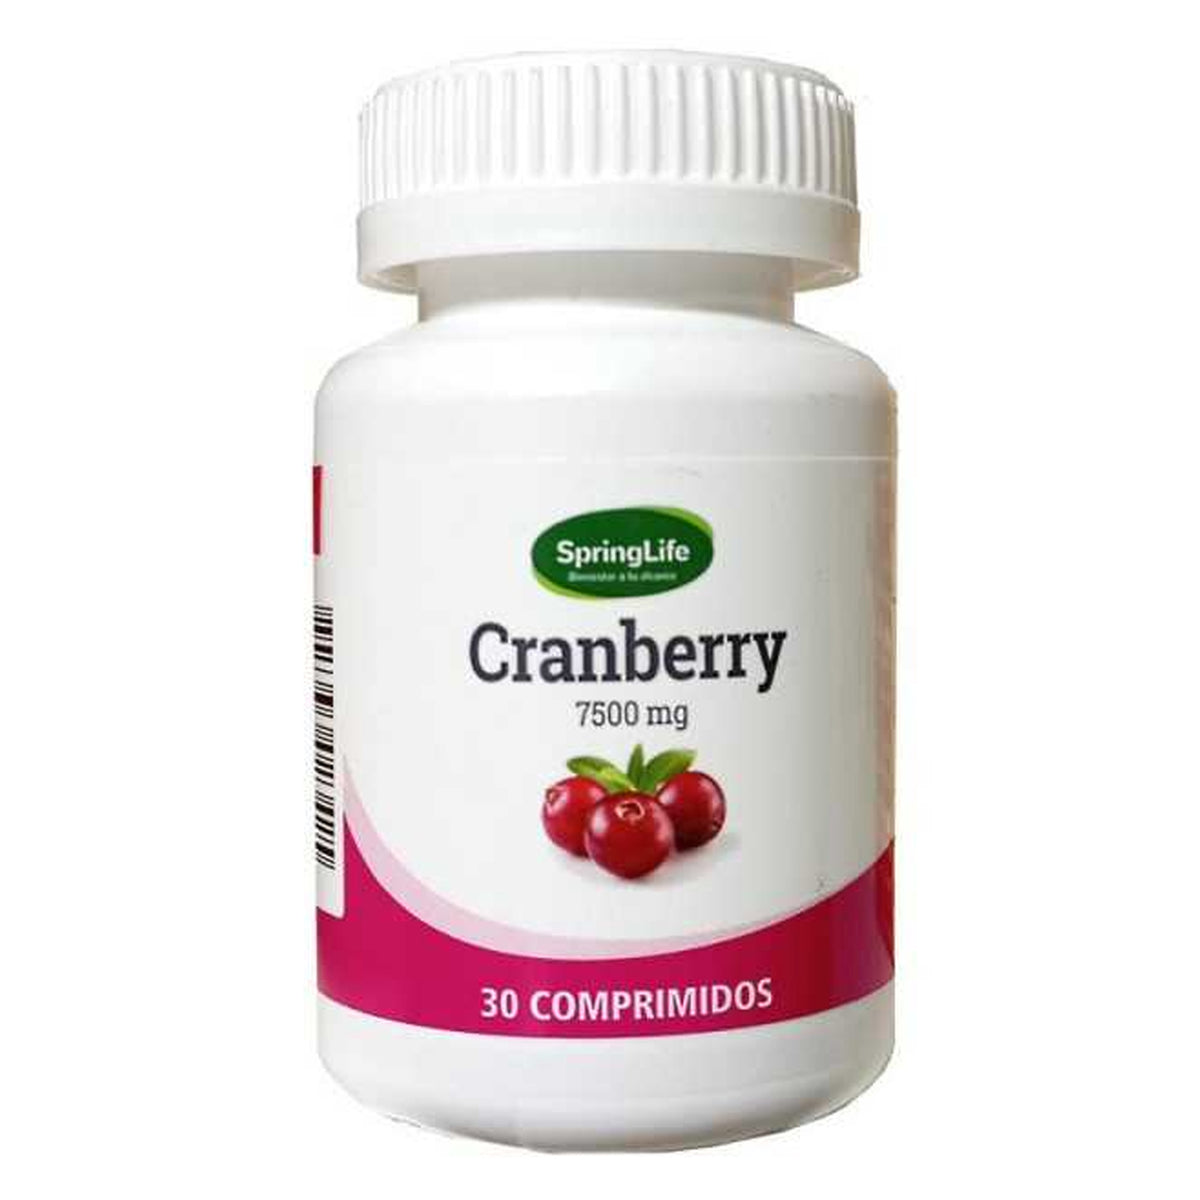 Cranberry Comprimidos